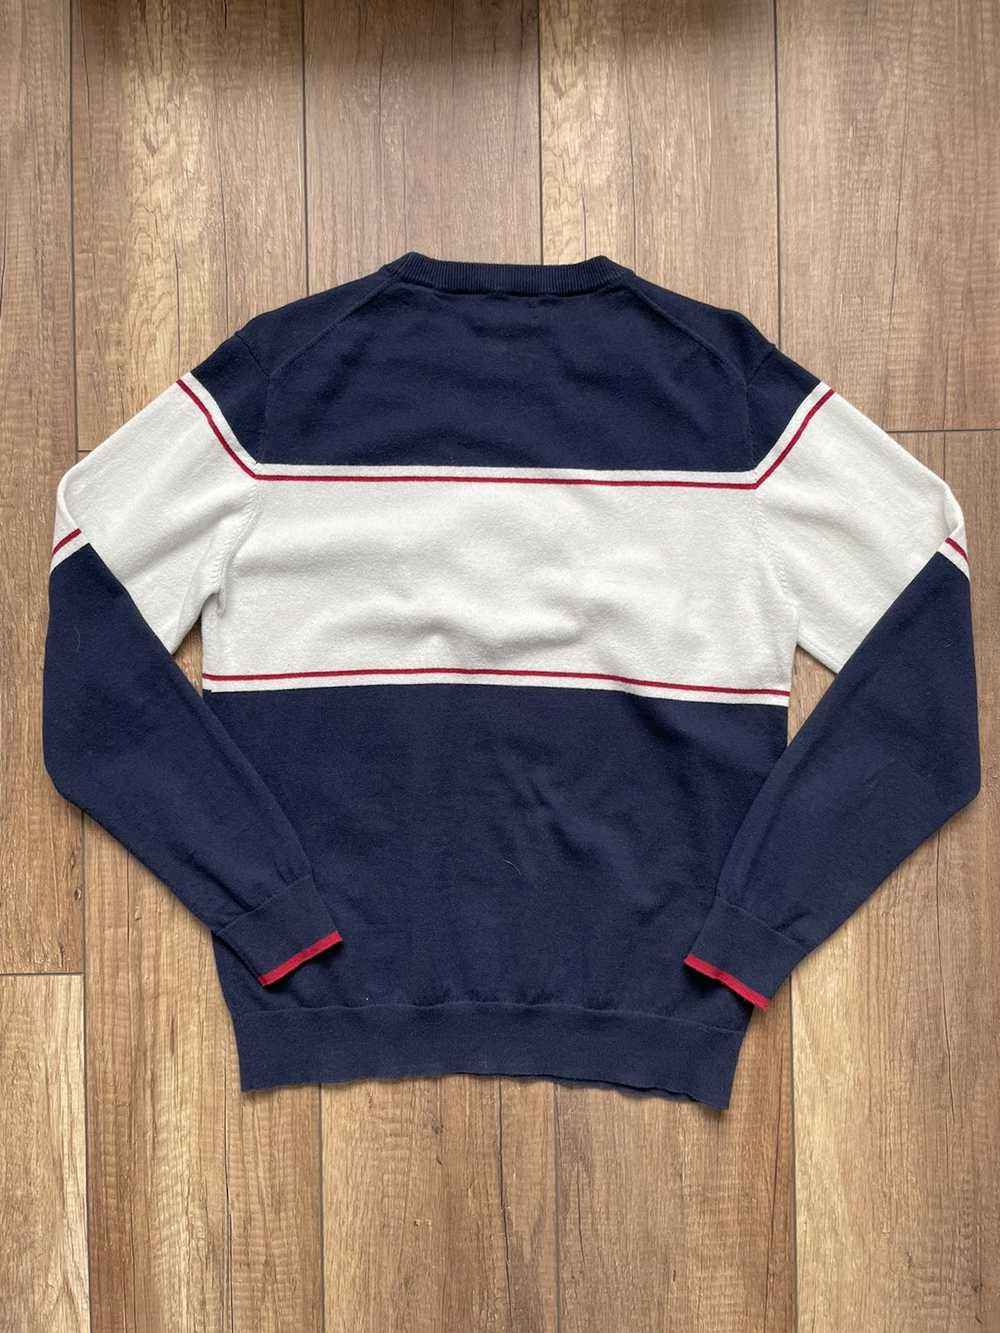 Gant × Streetwear × Vintage Gant sweatshirt vinta… - image 5